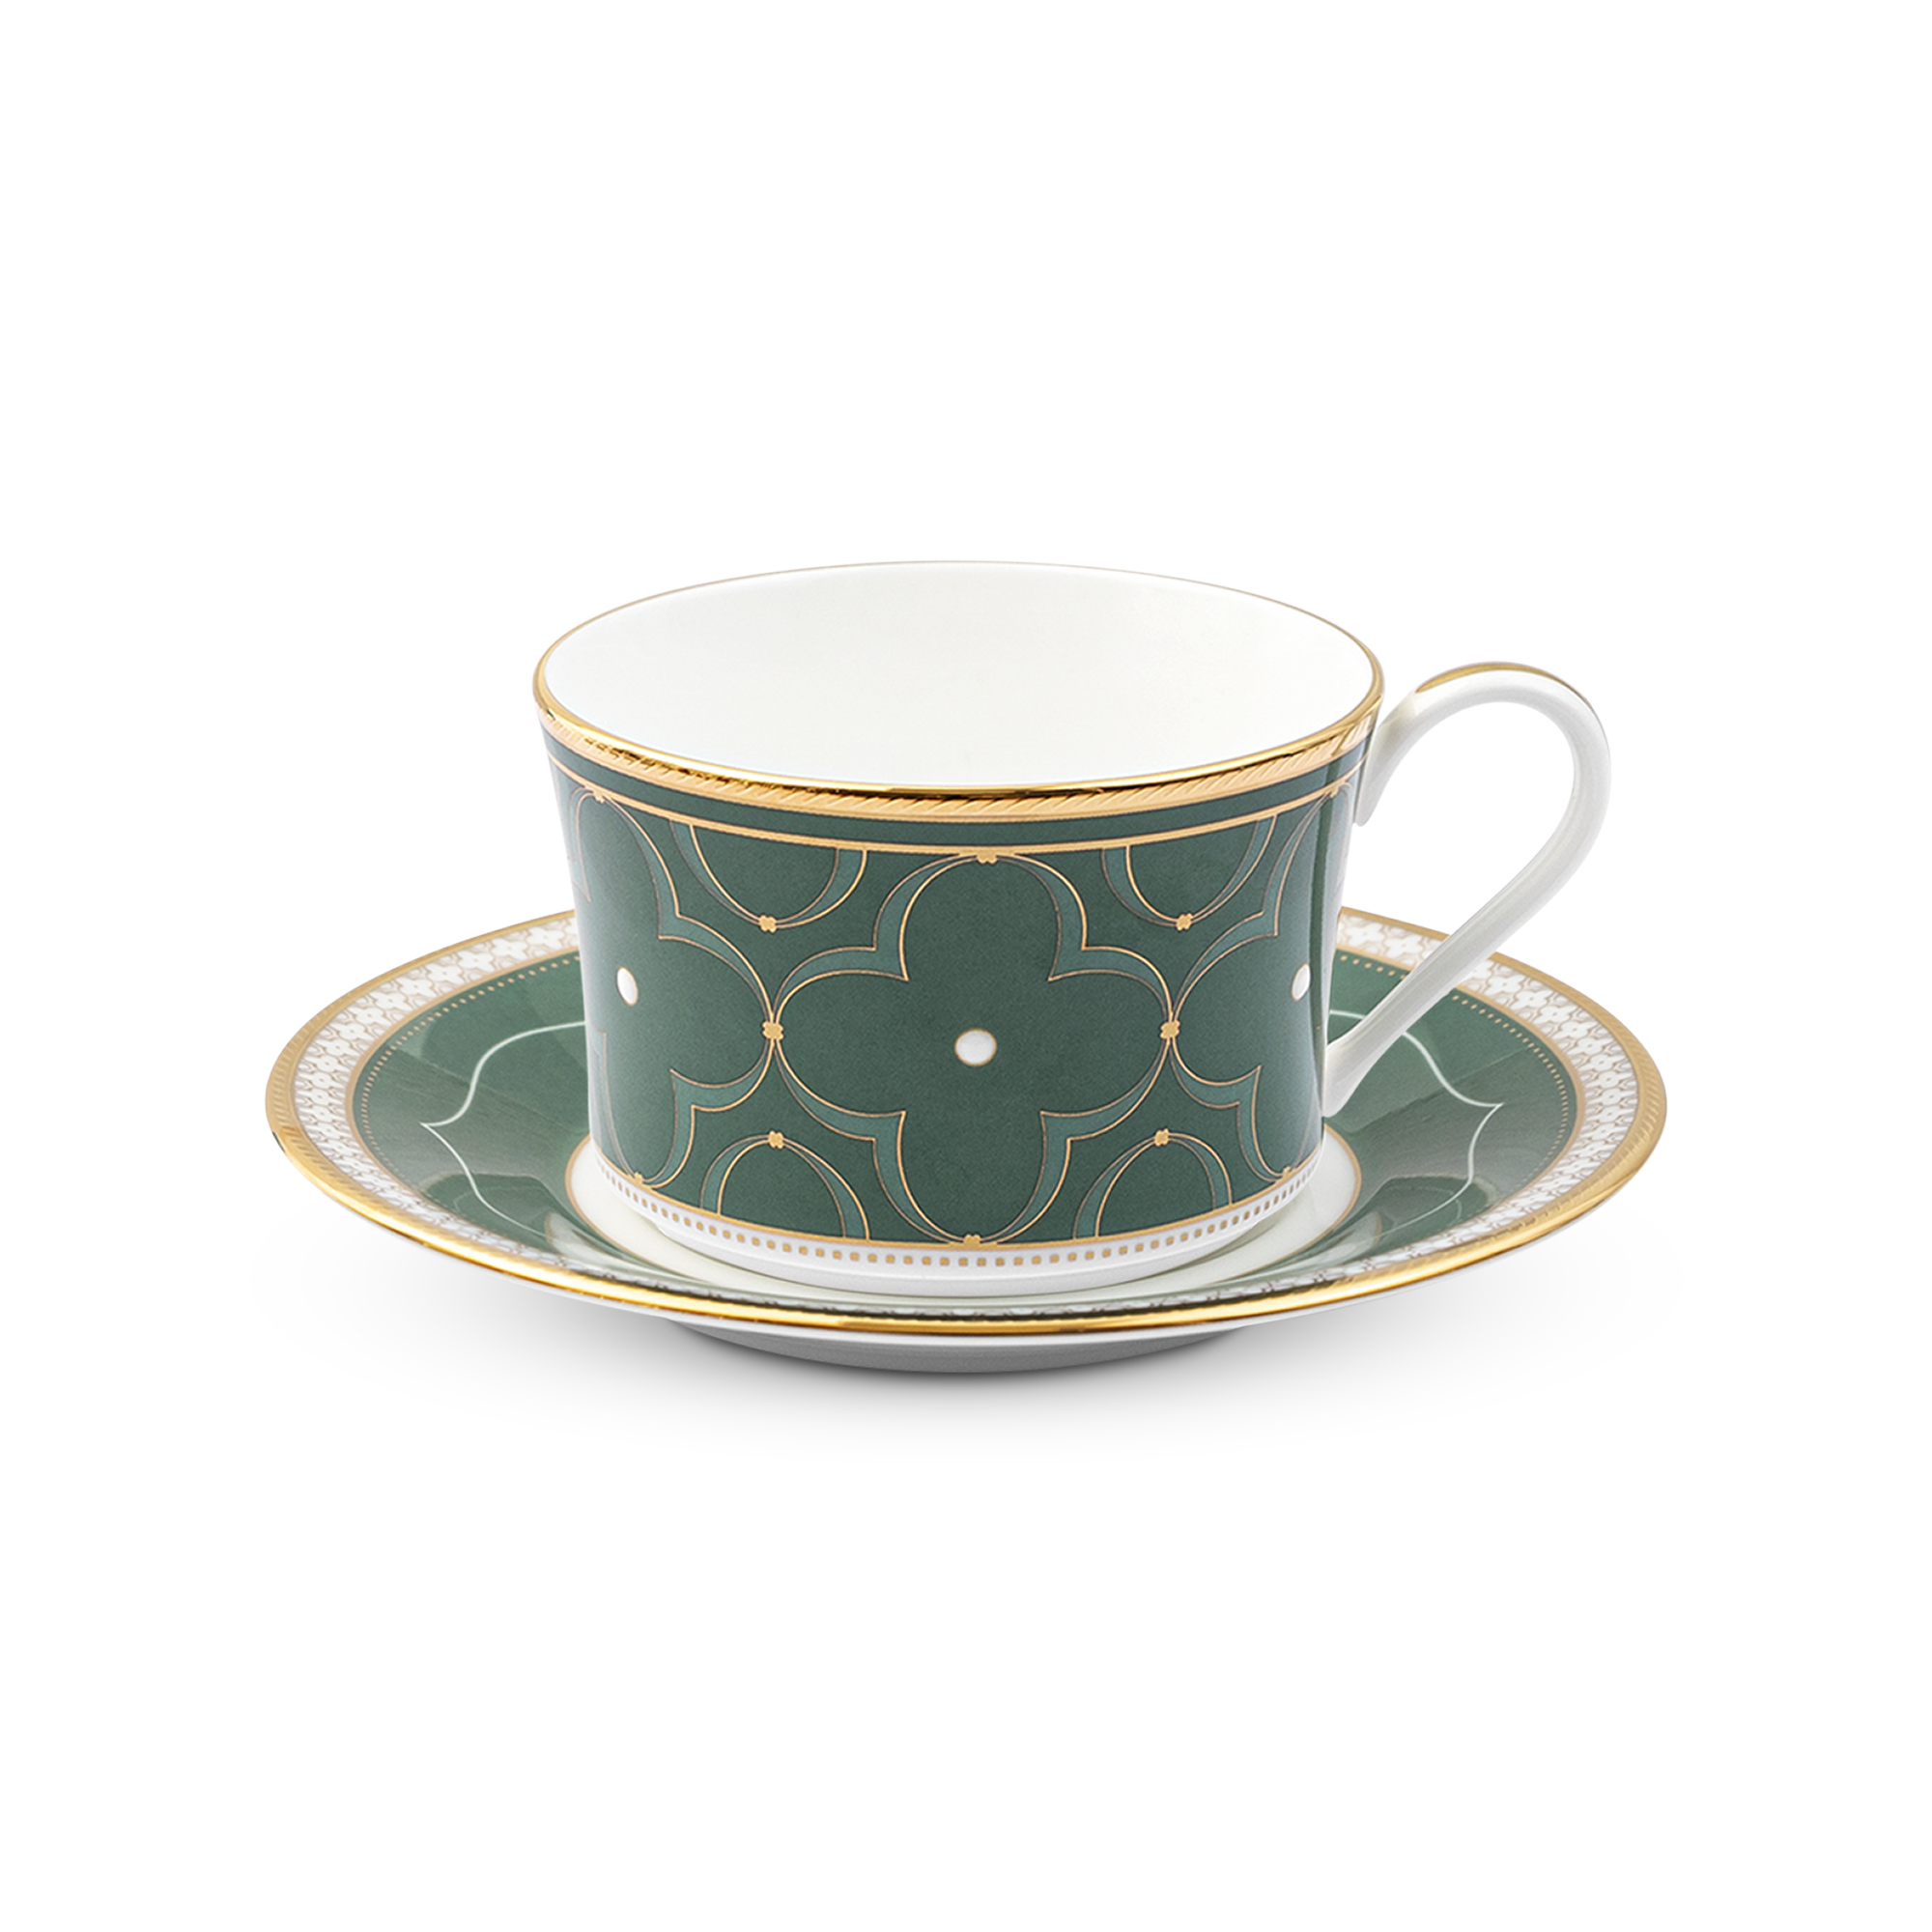  Chén trà (tách trà) kèm đĩa lót màu xanh 245ml sứ xương | Trefolio HC 4977-2L-T93686 